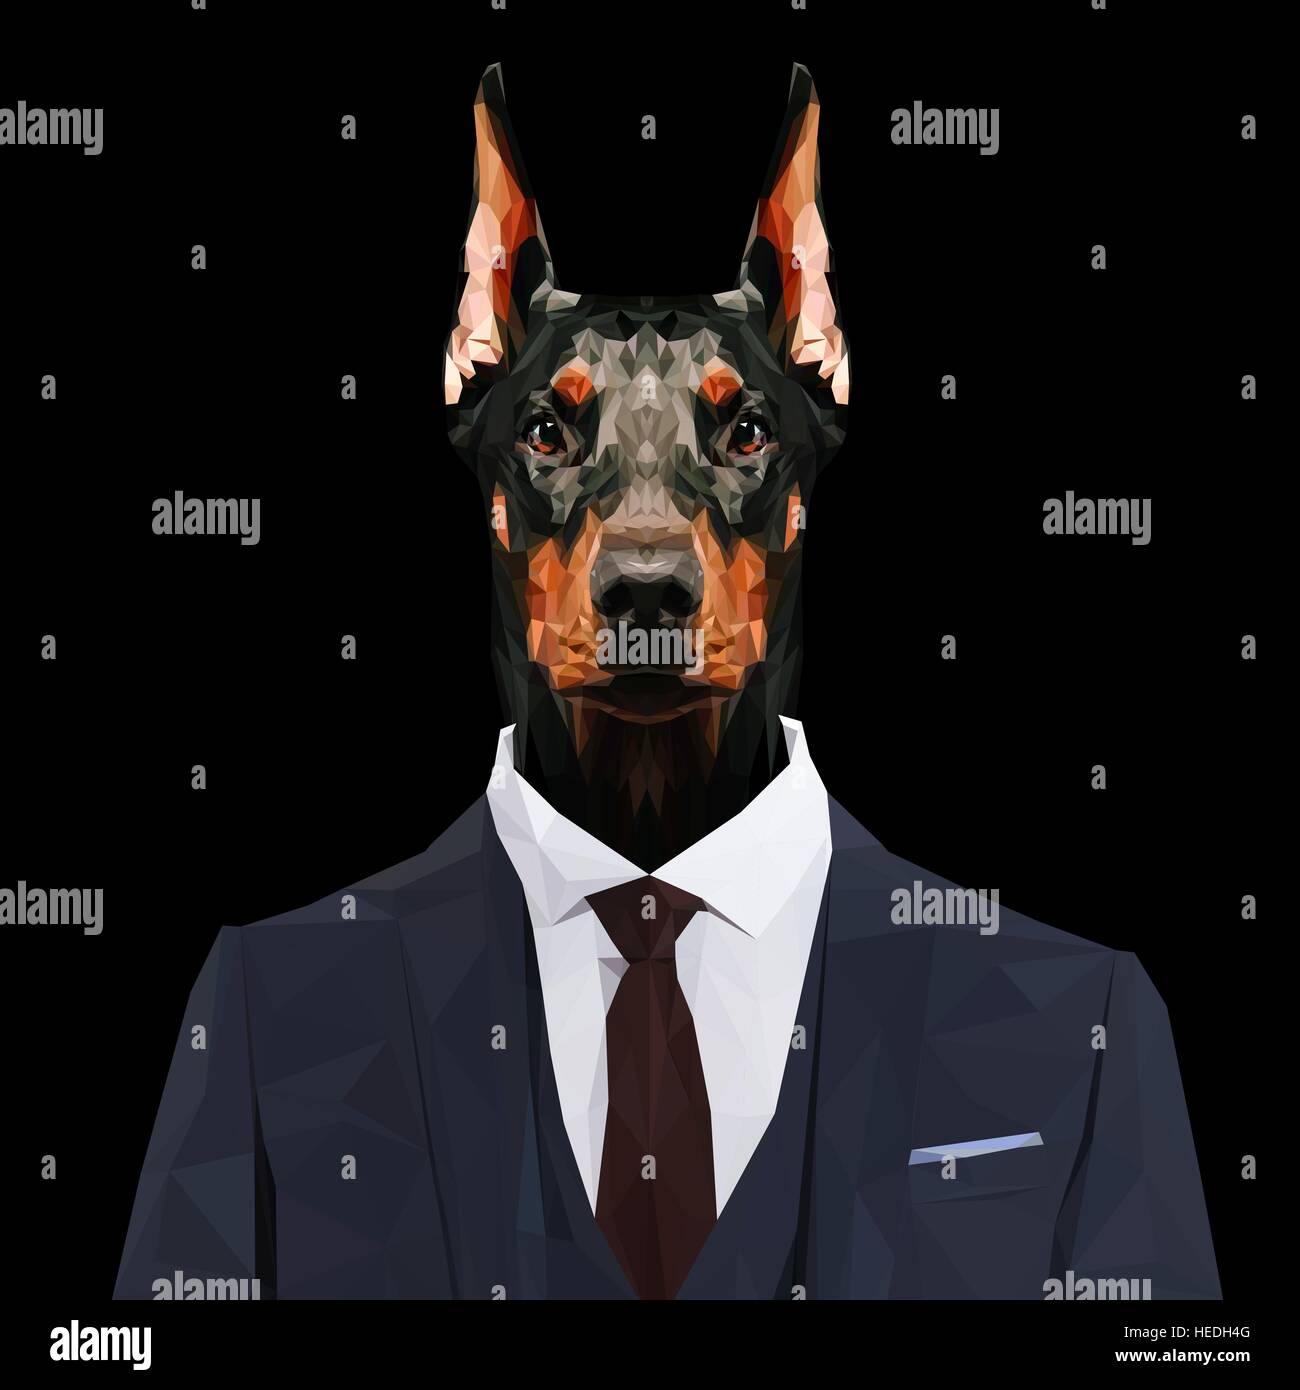 Doberman chien animal habillés en costume bleu marine avec cravate rouge. Homme d'affaires. Vector illustration. Illustration de Vecteur